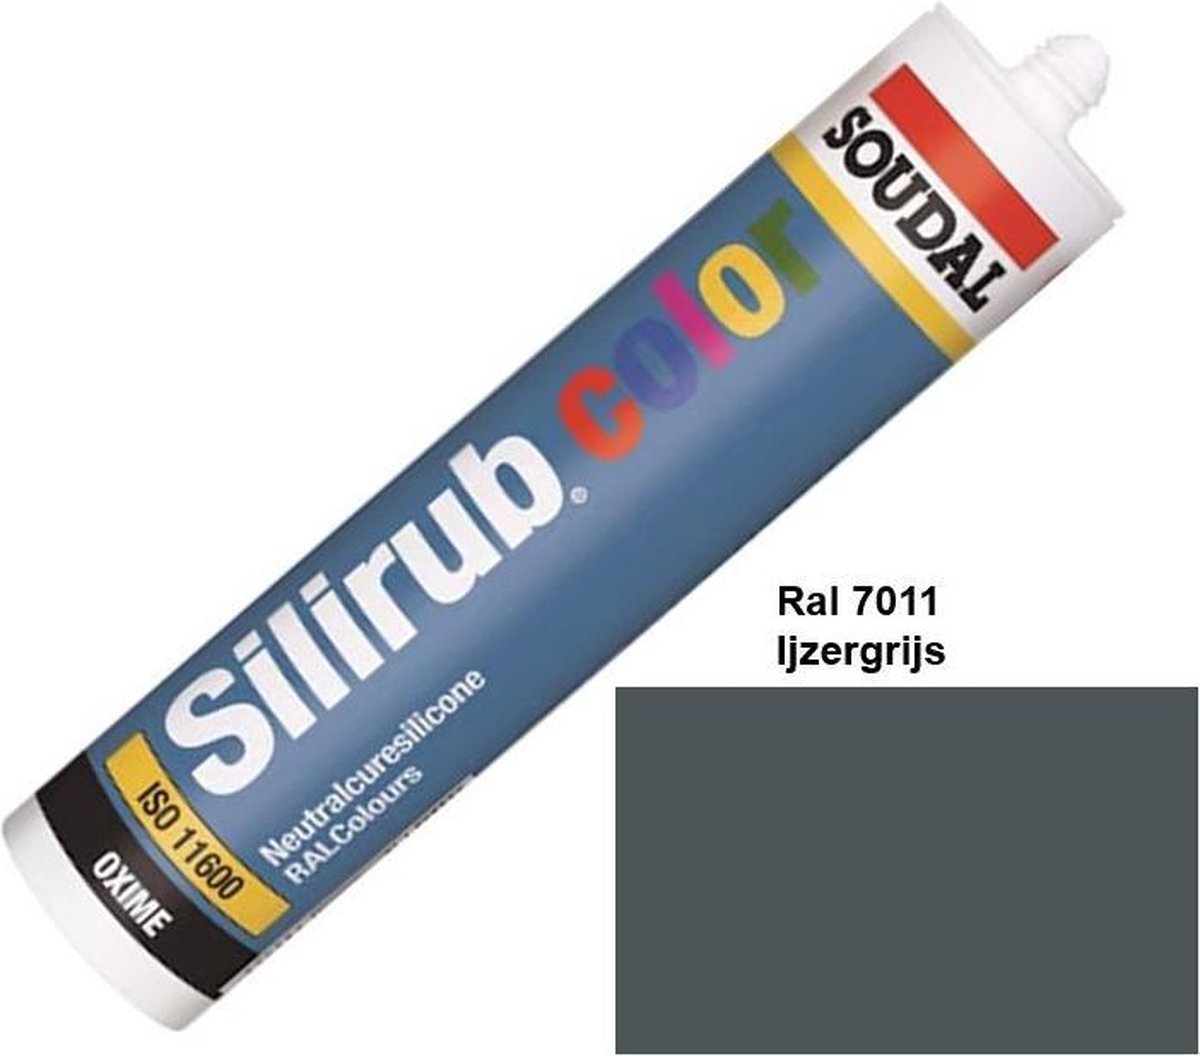 Soudal Silirub Color - Siliconekit - Montagekit - ook voor sanitaire - koker 310 ml - RAL 7011 ijzergrijs